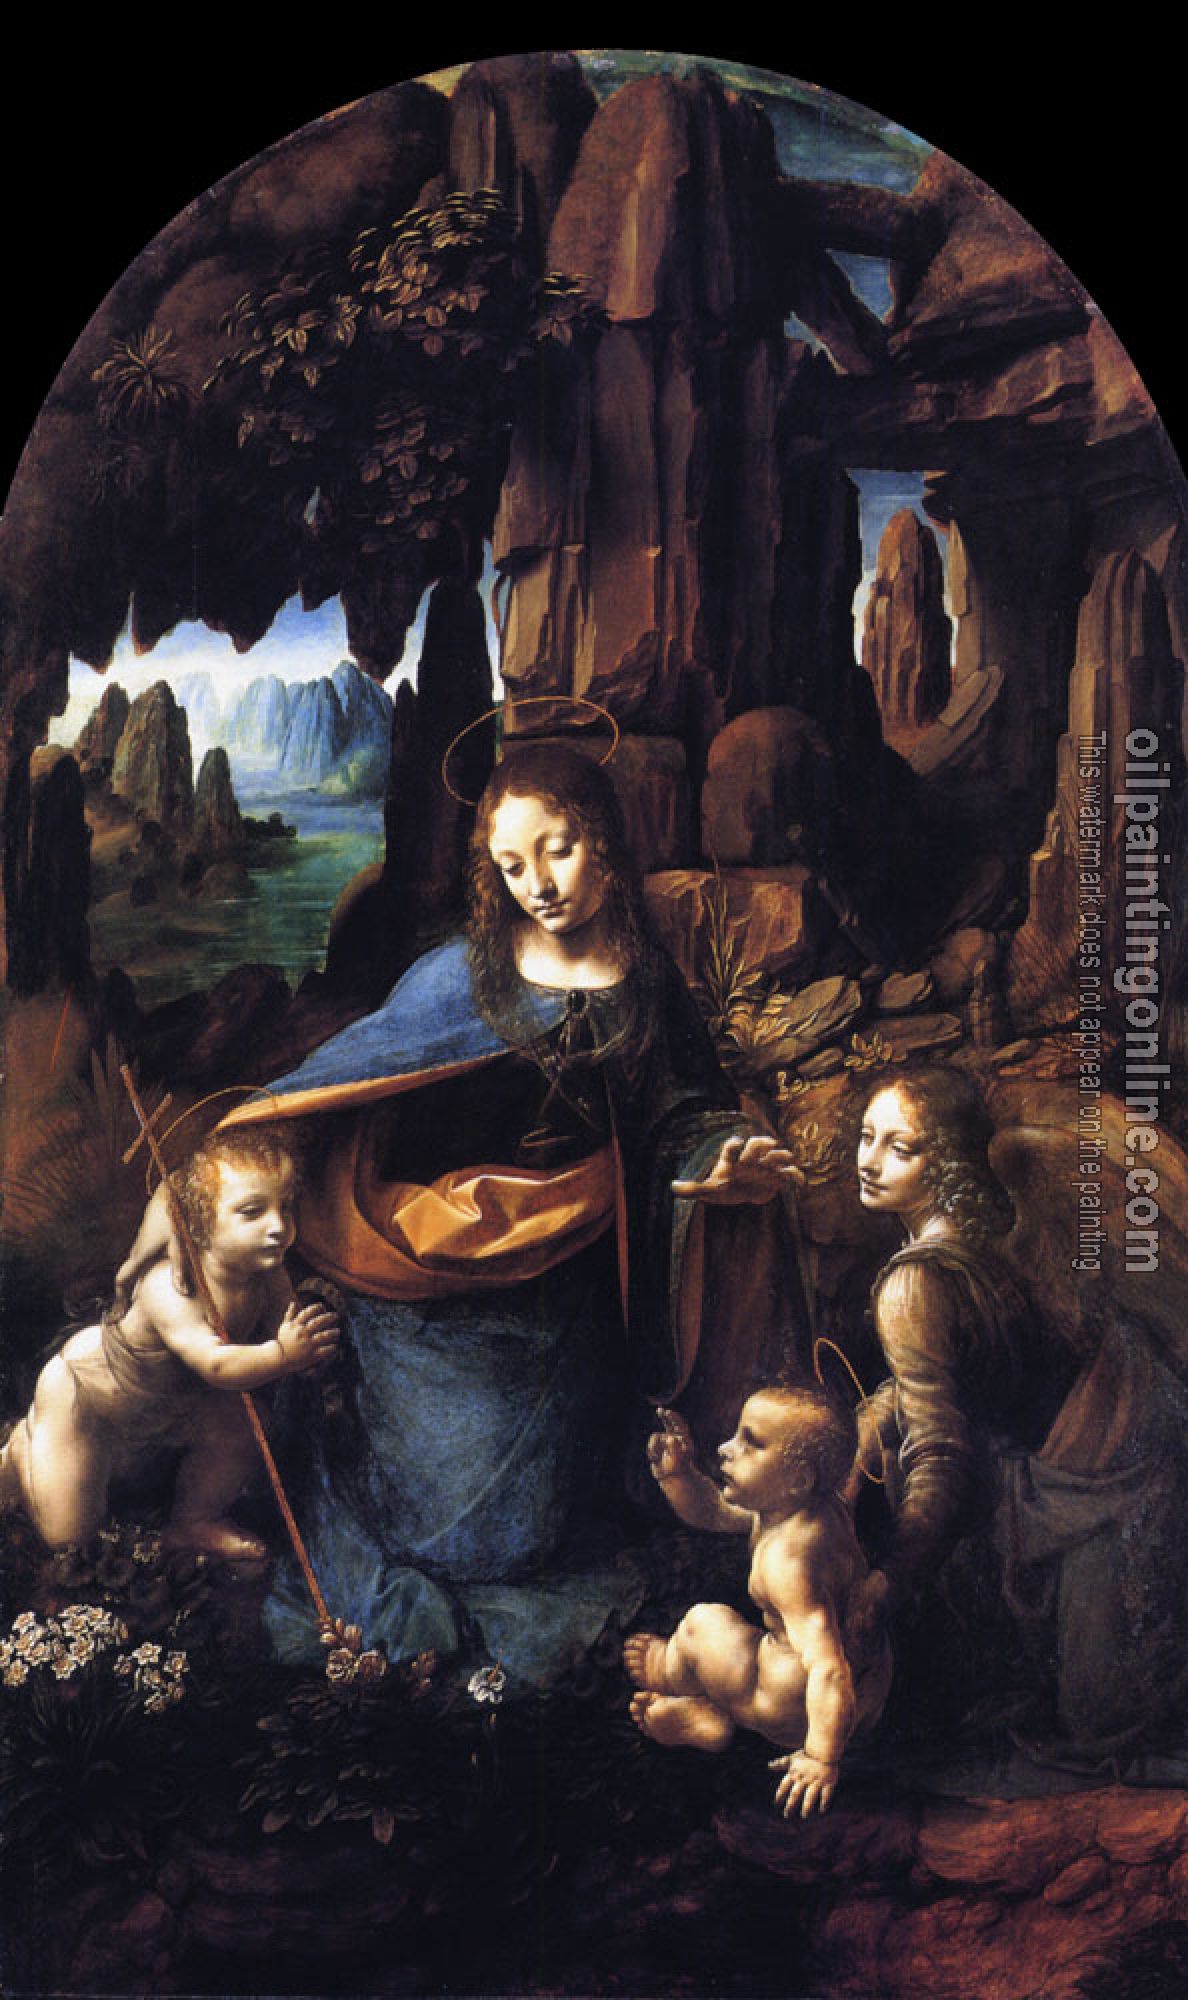 Vinci, Leonardo da - oil painting